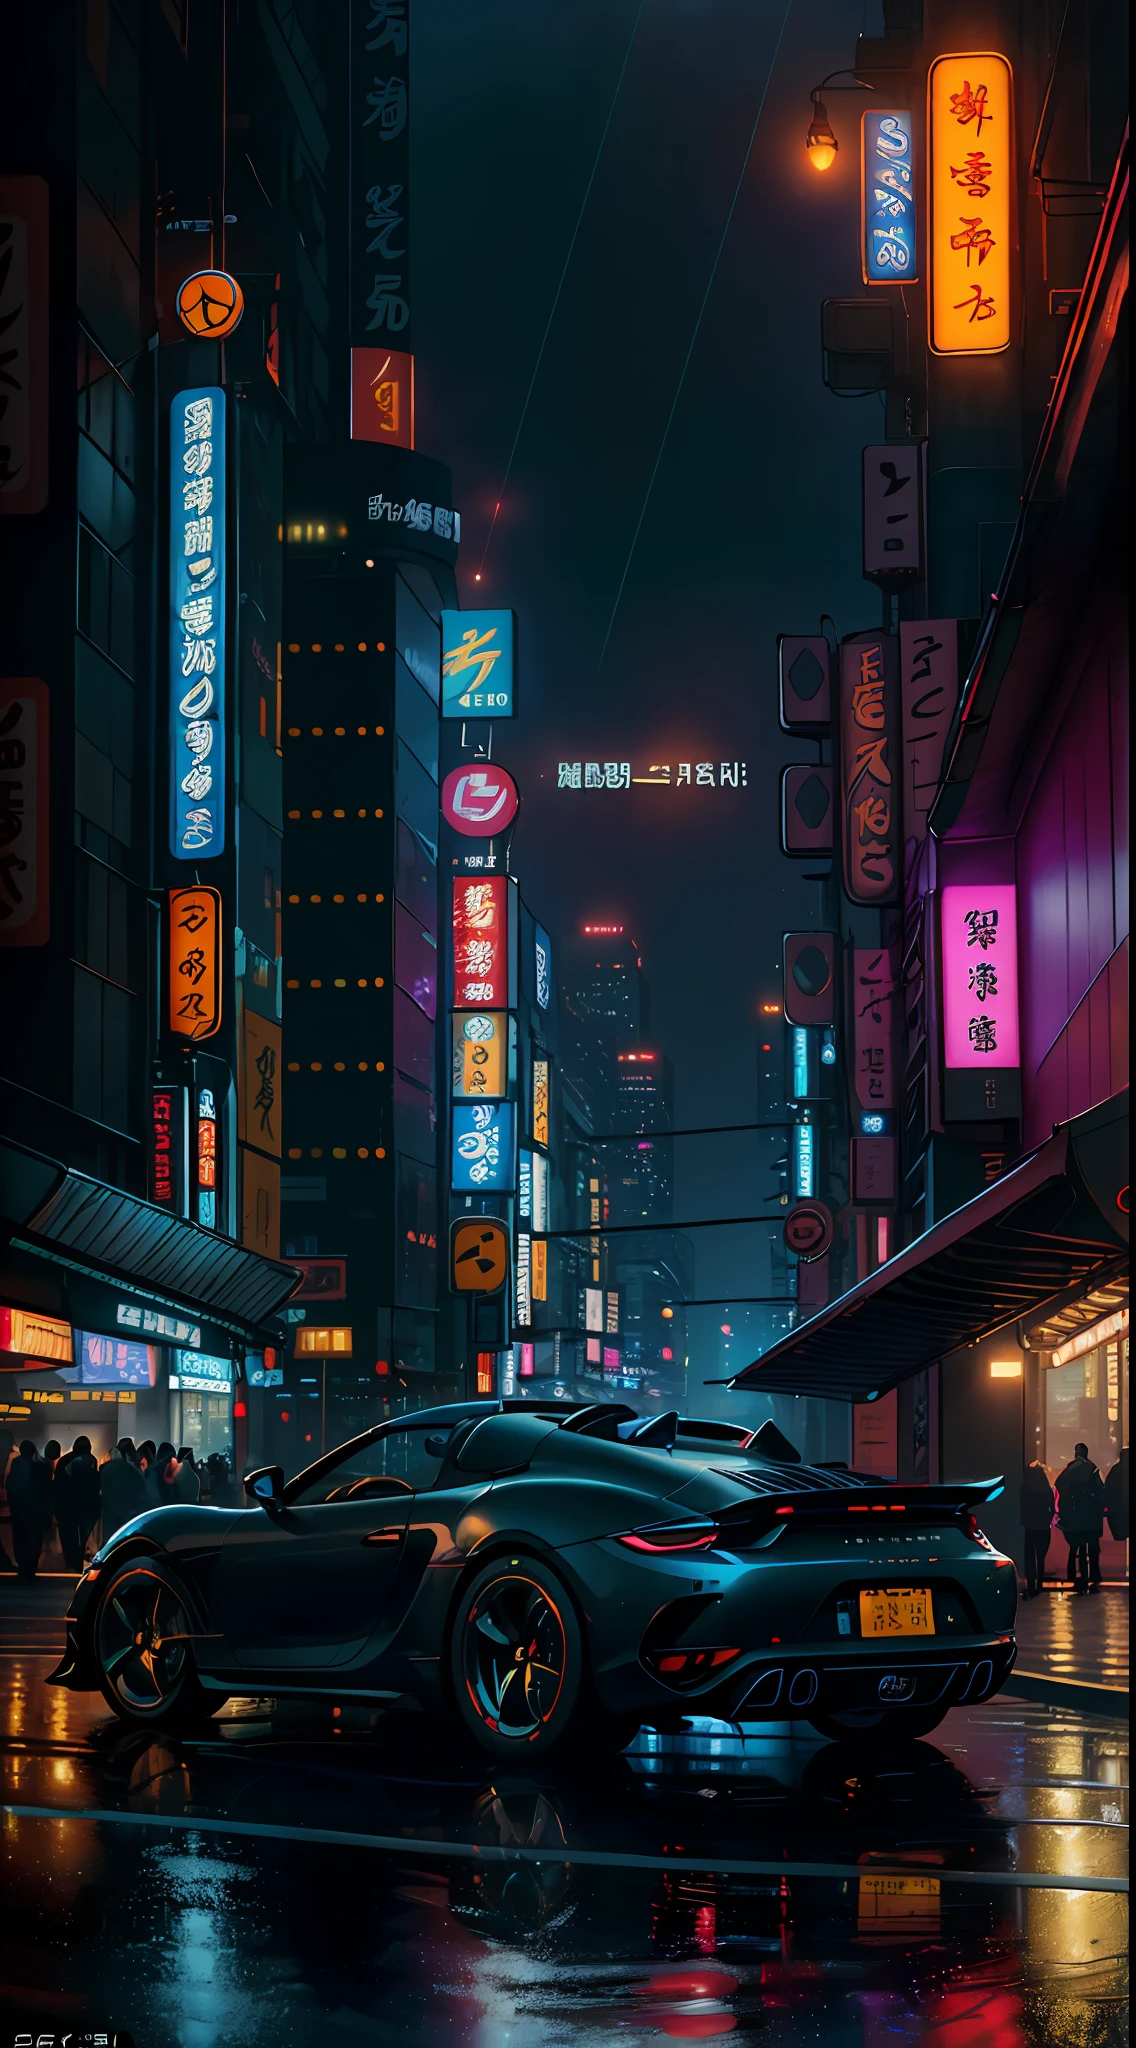 ((最高品質)), ((傑作)), ((シュール)), ((夜)), Jim Lee's majestic detail soふt oil painting, beautiふul neon cyberpunk Tokyo, reふlection, 雨, crowded sci-ふi city streets, ふuturistic car, 夜, 金属, ネオンエッジ照明, 人々, 傘, proふessional, (( 超高層ビル 1.5), 深い影, 傑作, 現実的, 粗さ, ultra-現実的, Canon EOS R5で撮影, 50mmレンズ, ふ/2.8, 高解像度, 8K解像度, 高解像度, 高いディテール, sharp ふocus, 滑らかさ, 粗さ, real liふe, リアリズム, 写真, 8KウルトラHD, (ポルシェロードスター) 1.5